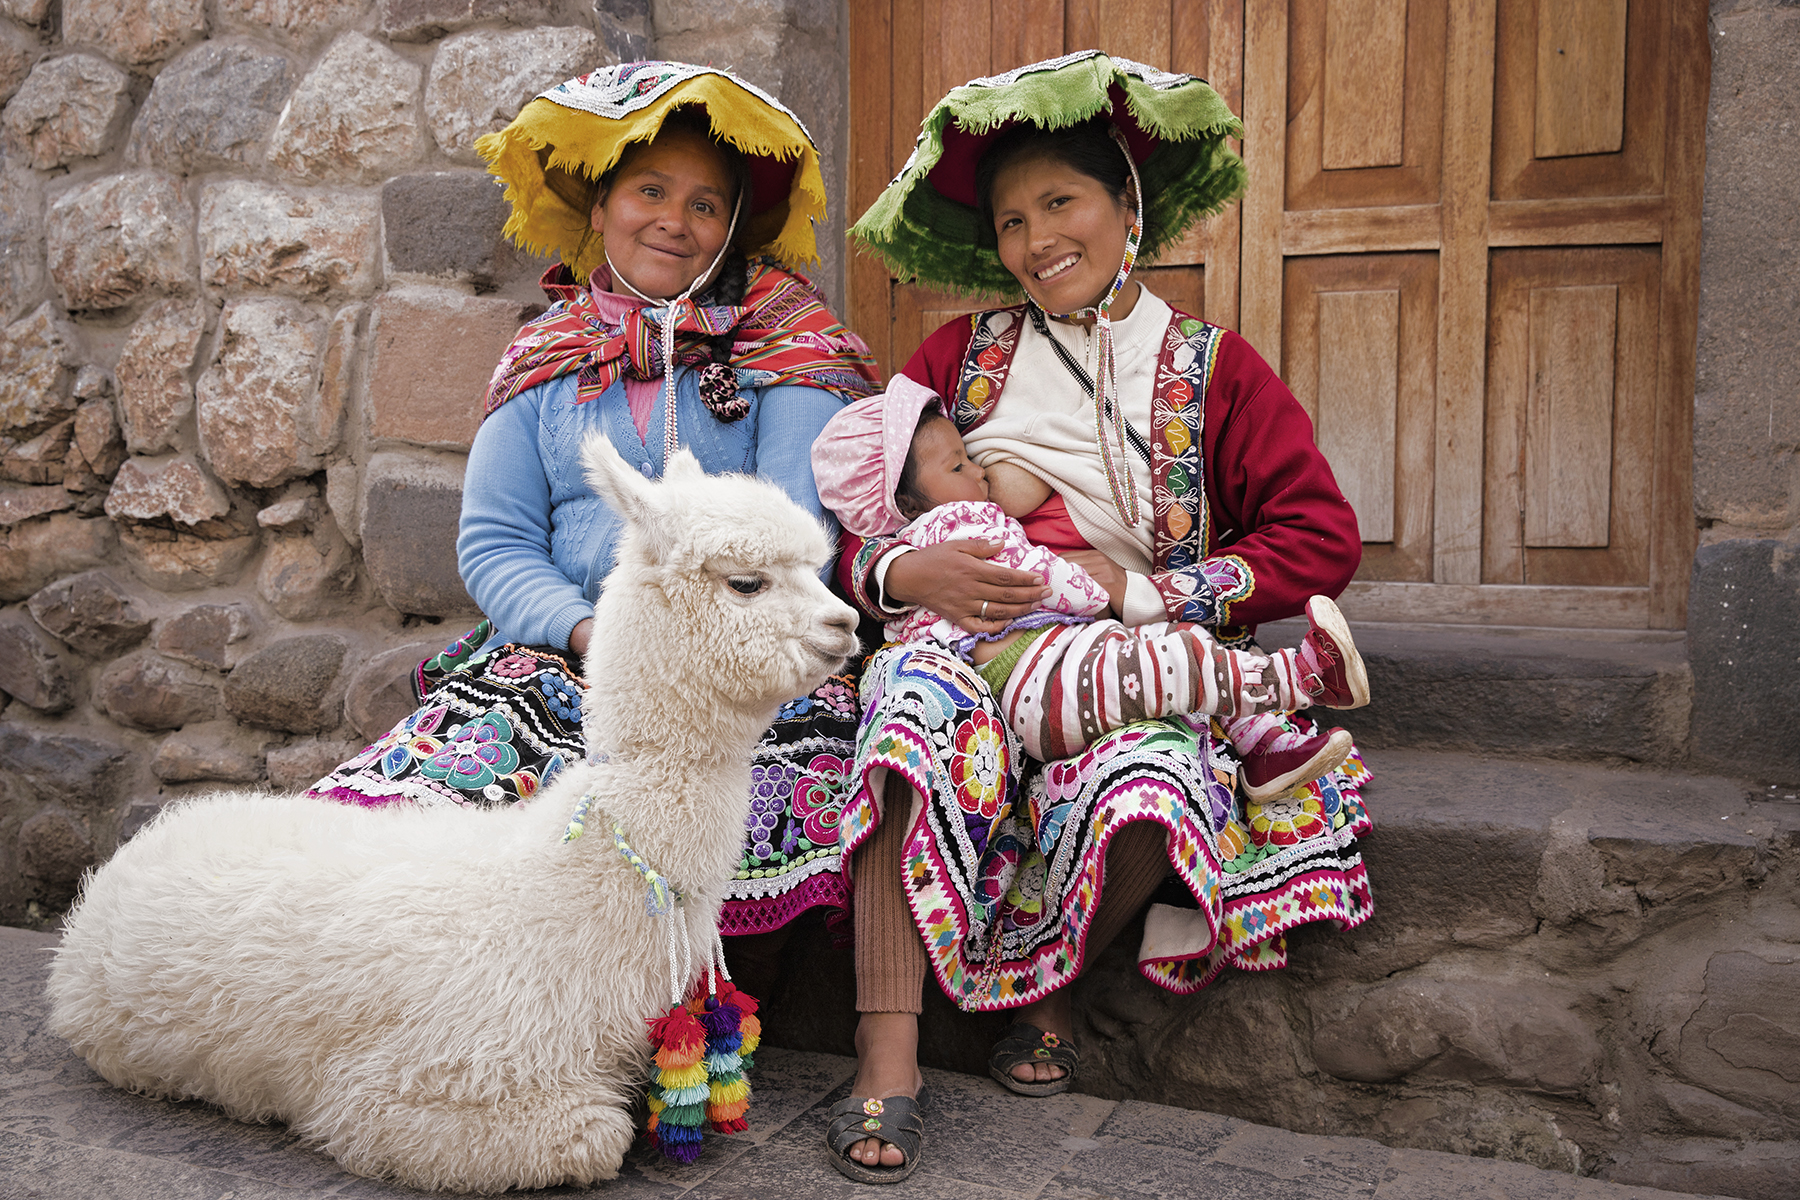 PHOTO: Maryluz poses while breastfeeding in Peru.